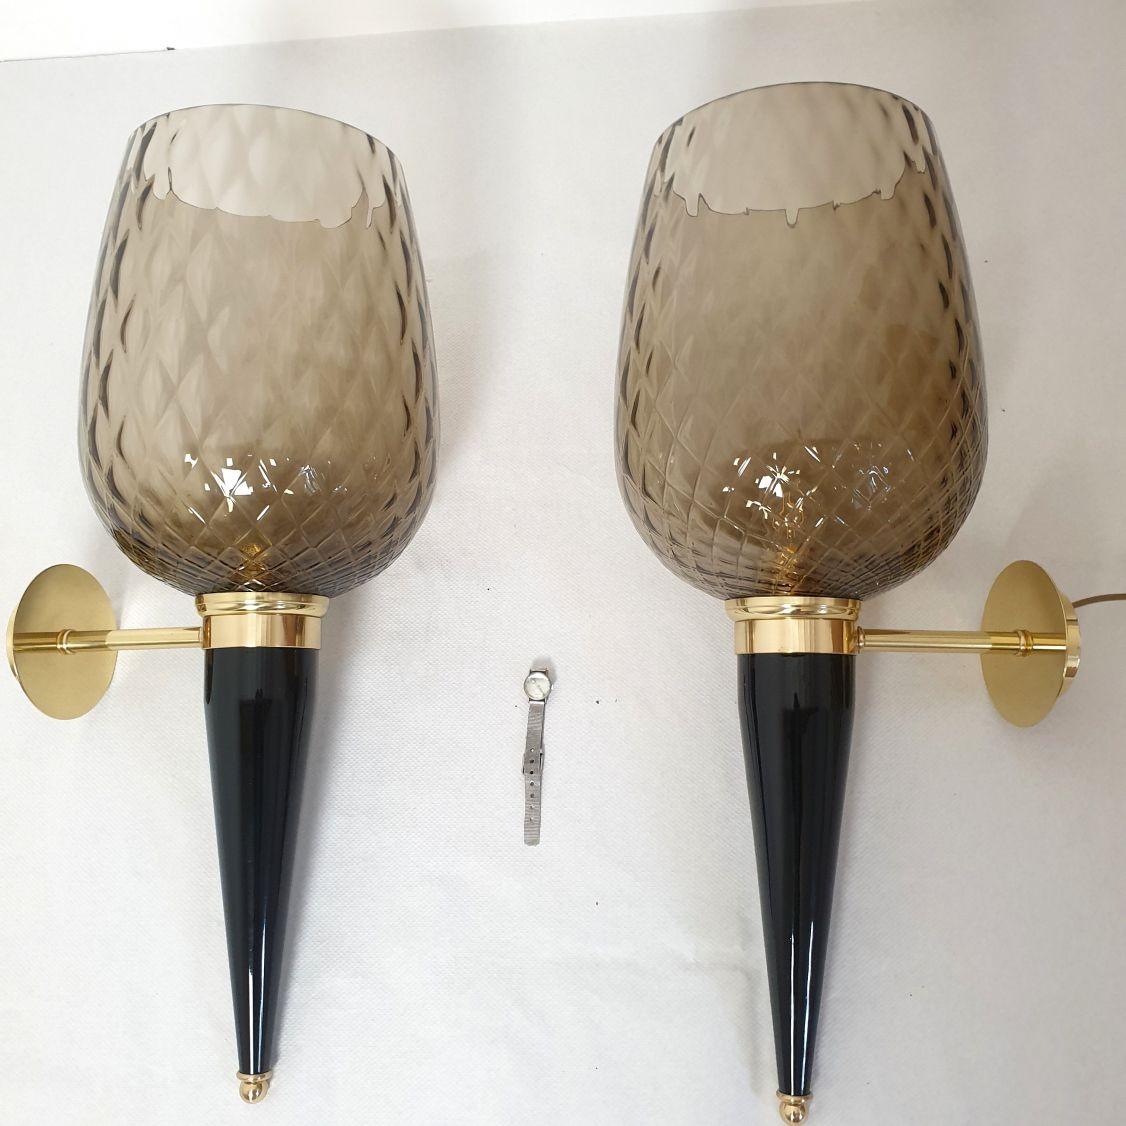 Paar extra große Murano-Glasleuchten, Mila Schon zugeschrieben, Italien 1970er Jahre.
Satz von sechs oder drei Paaren erhältlich. Verkauft und bepreist pro Paar.
Die Mid-Century Modern-Leuchten bestehen aus einer lichtdurchlässigen, hellbraunen,